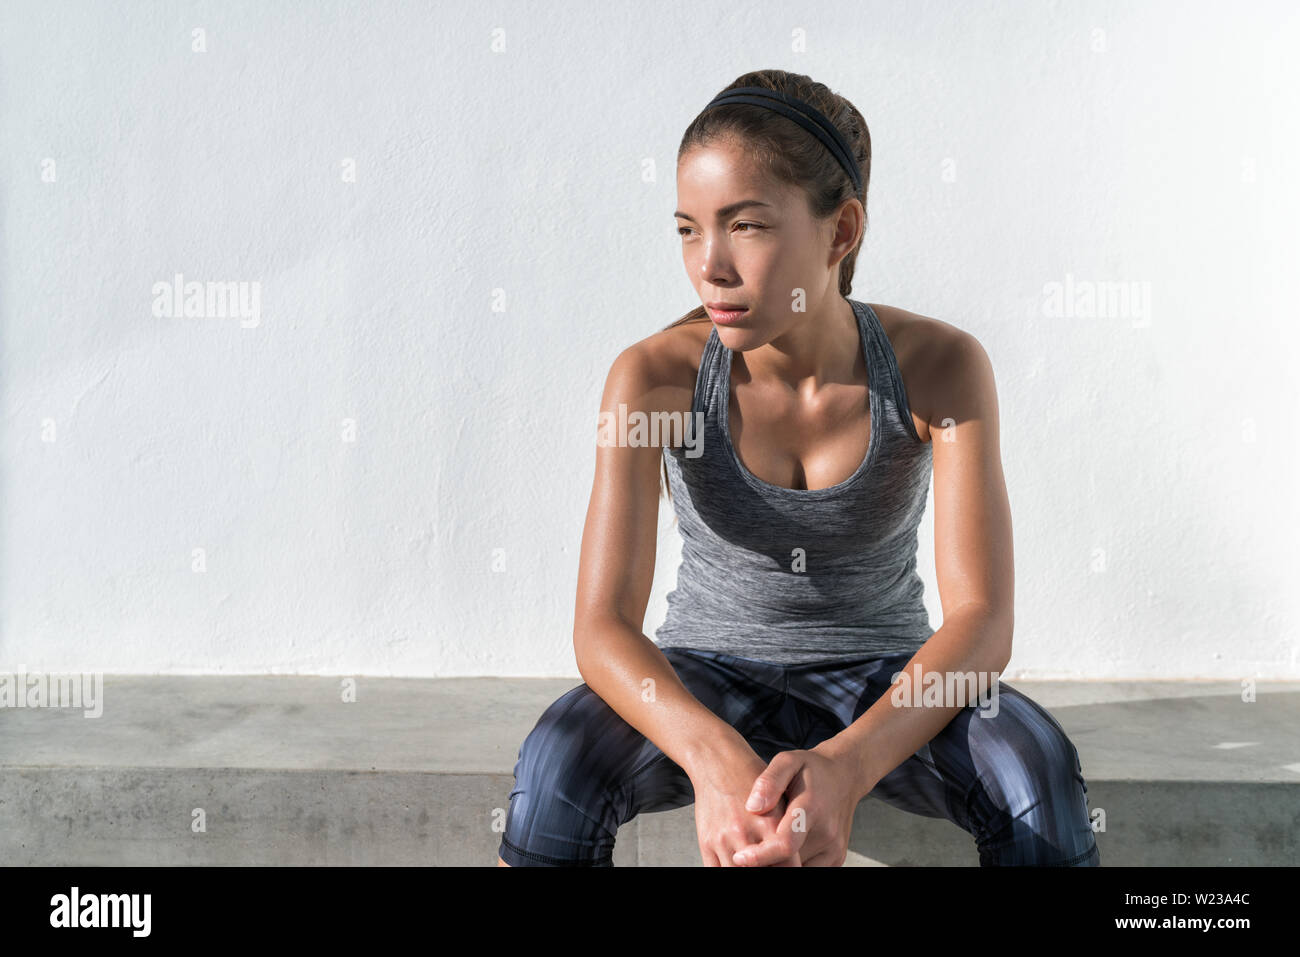 Asiatische fitness runner Frau denken nachdenklich während des Trainings. Ernsthafte Sportler Modell auf der Turnhalle pause Müdigkeit unzufrieden, deprimiert über Gewichtverlust Fortschritt oder Selbstwertgefühl vertrauen. Aktives Leben. Stockfoto